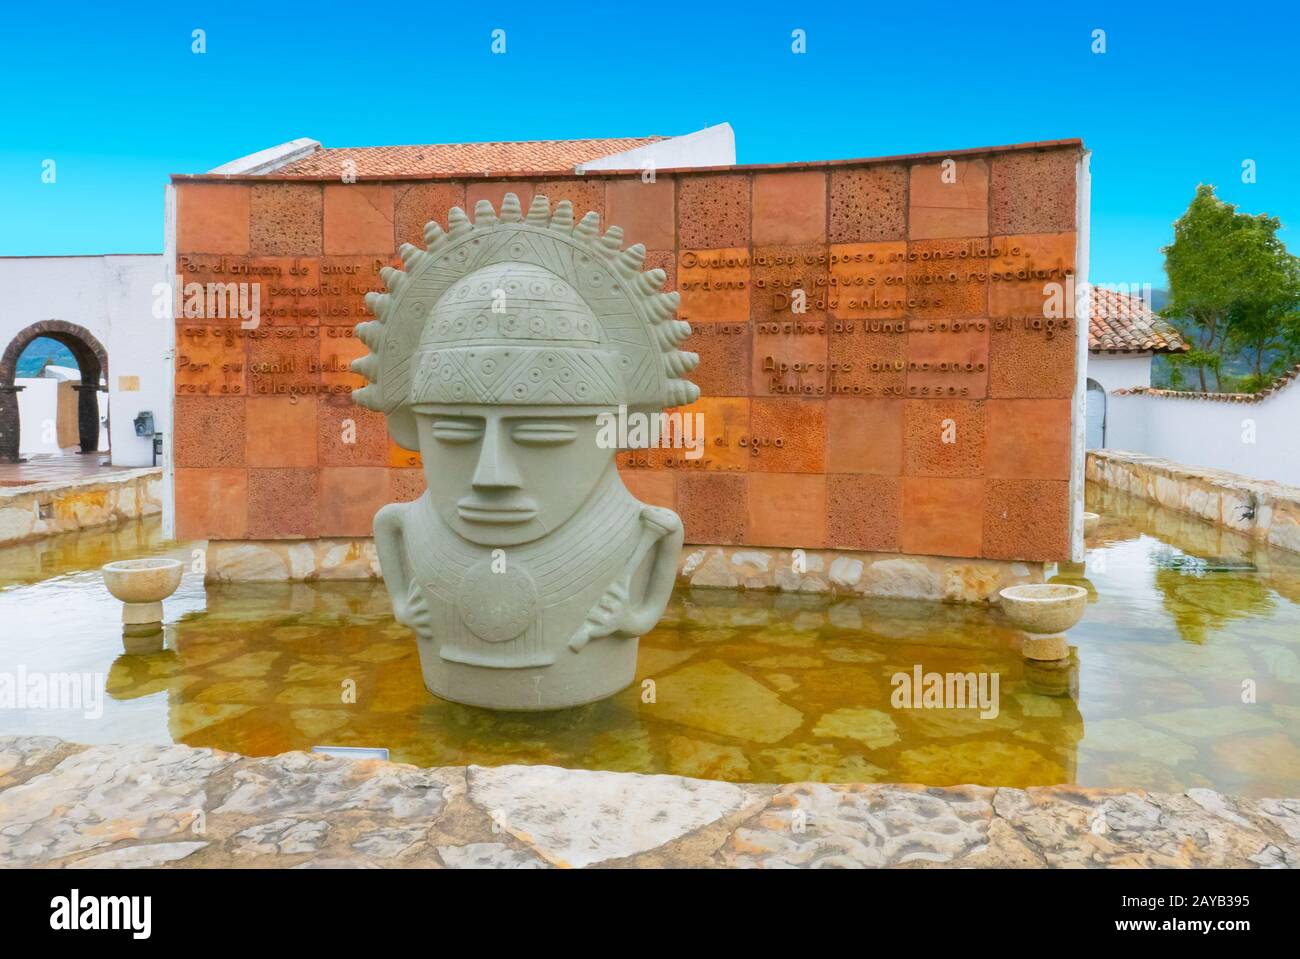 Colombia Guatavita sculpture Cacique of Guatavita sculpture and fountain Stock Photo